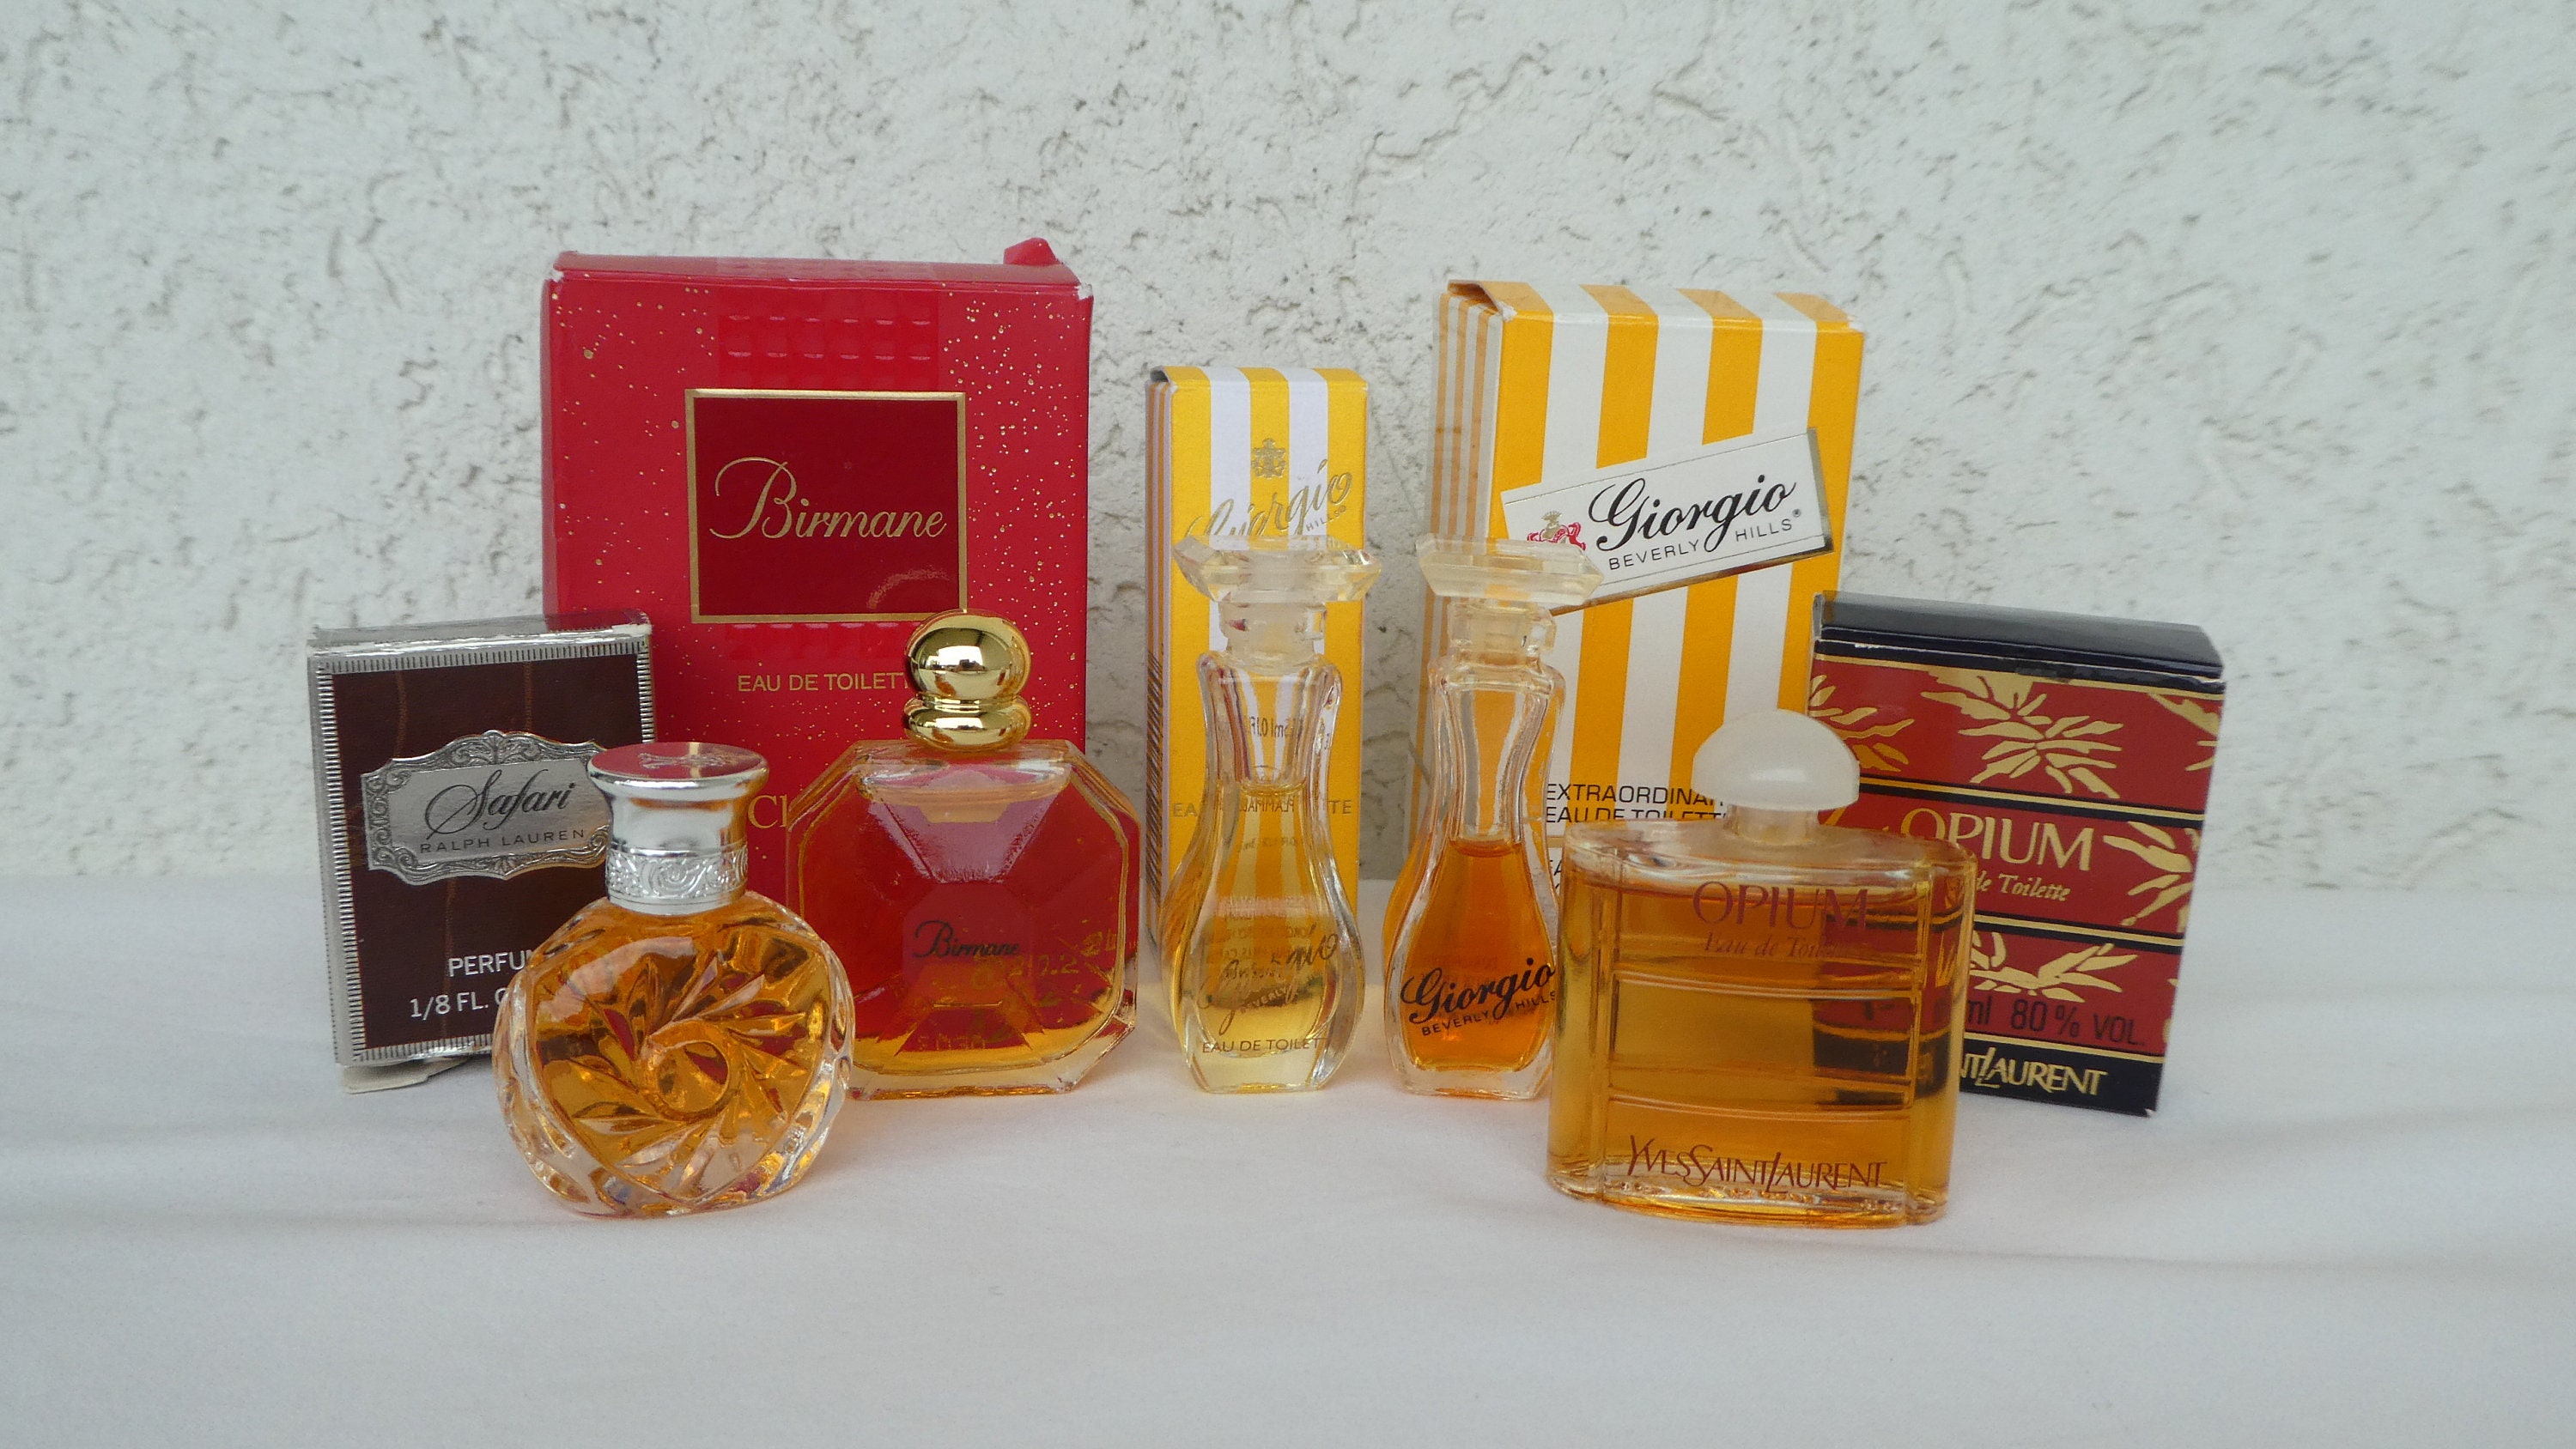 Ralph Lauren Perfume 